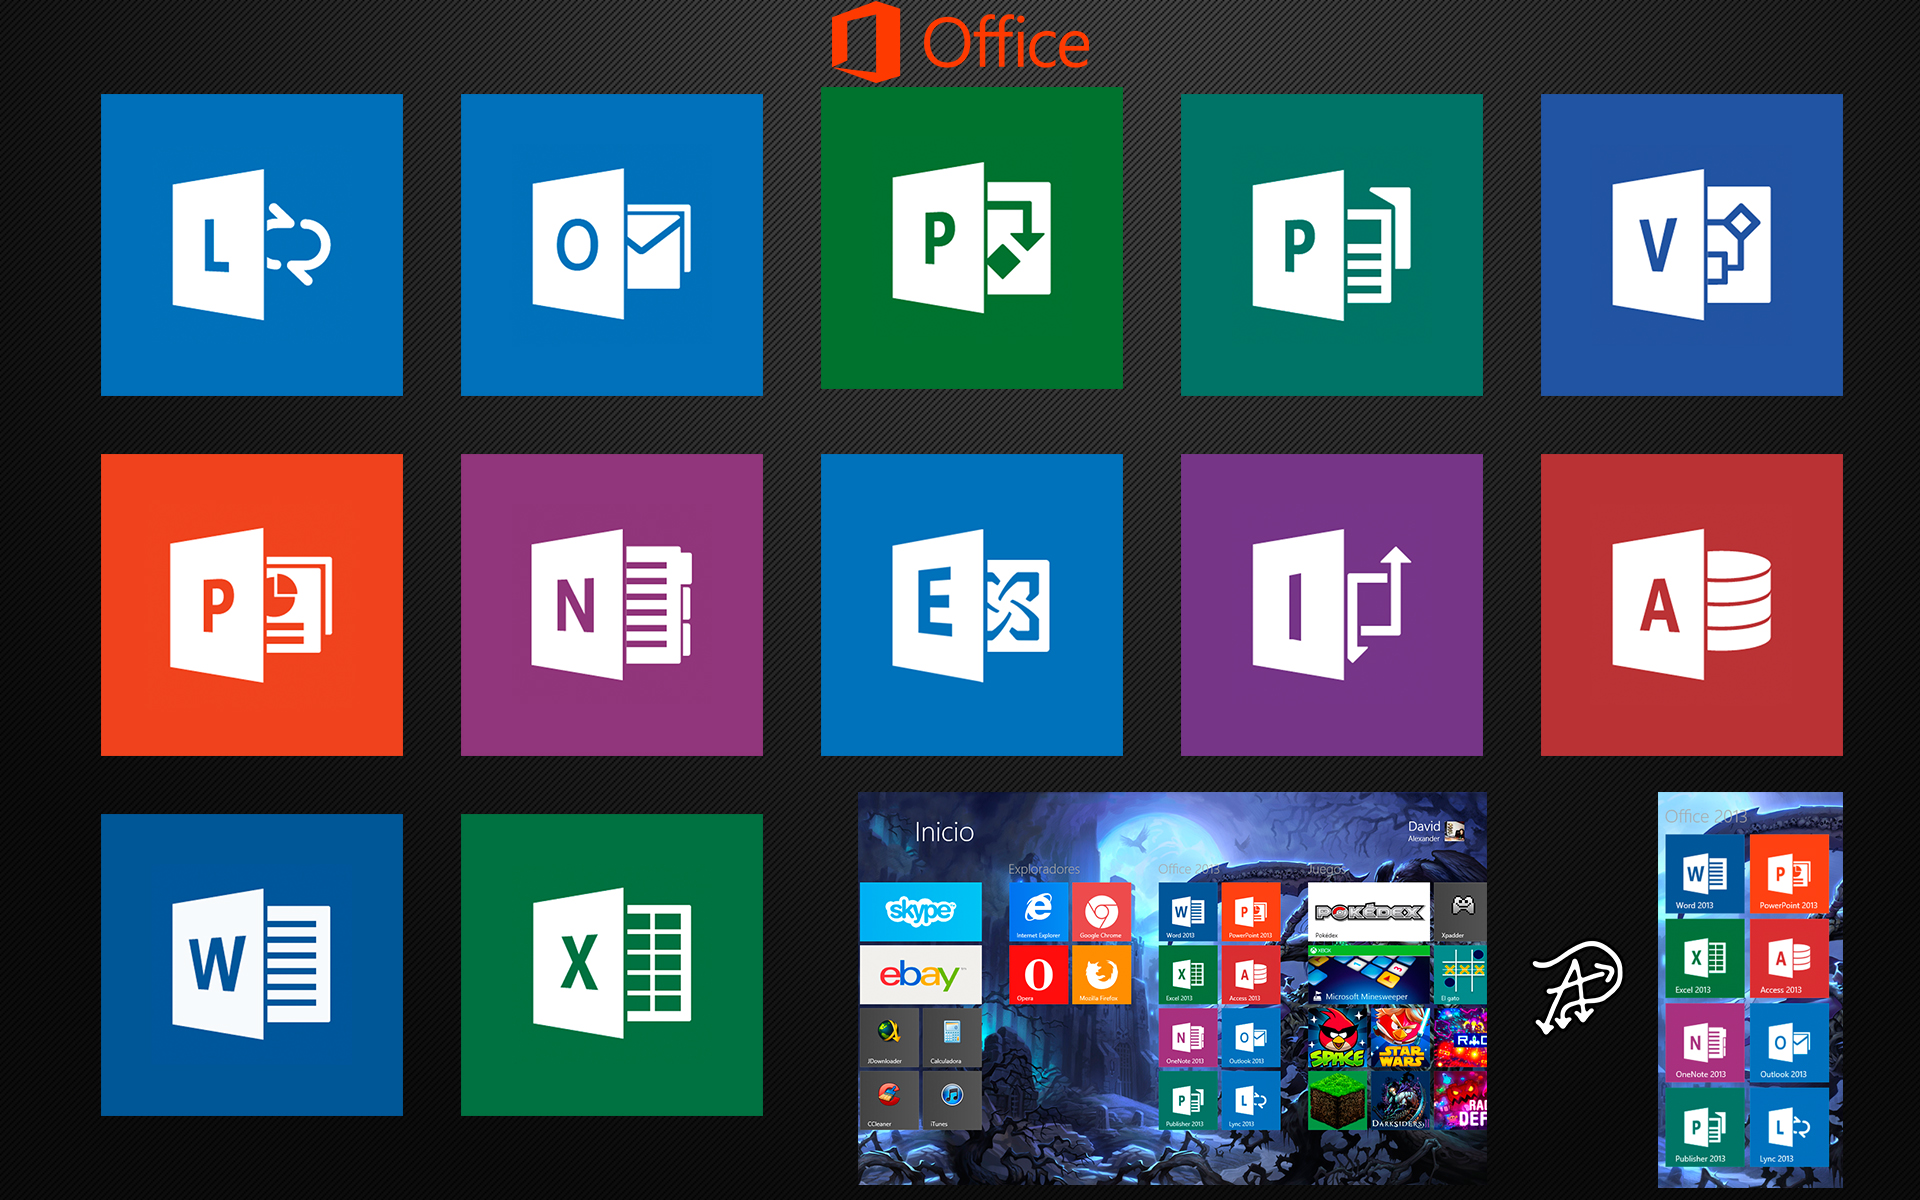 Microsoft Office 2013 Windows 8